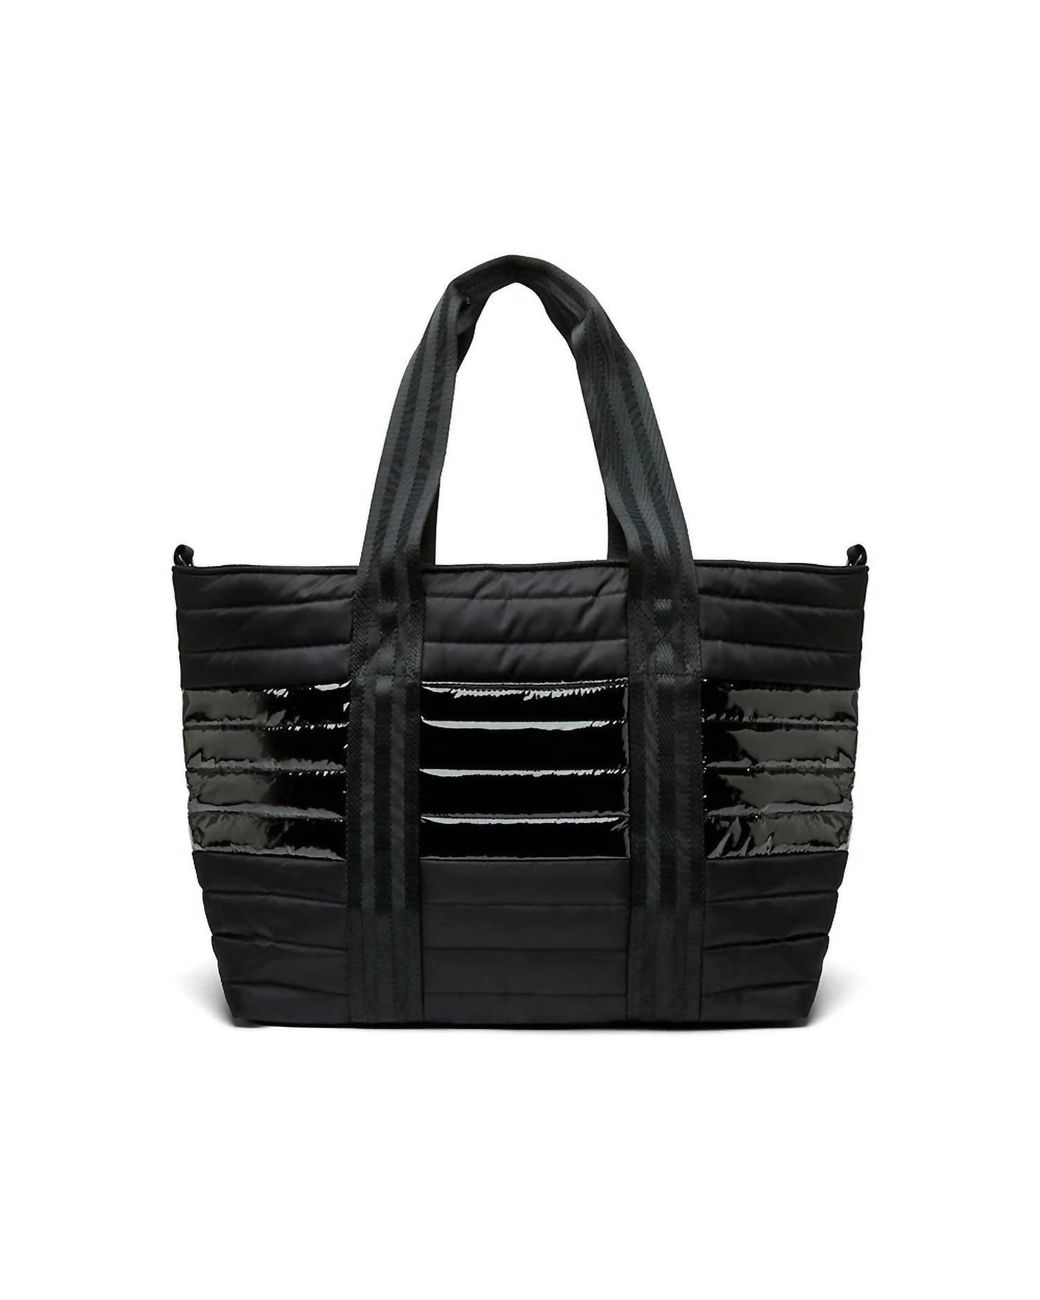 Think Royln Luxe Studio Bag in Black